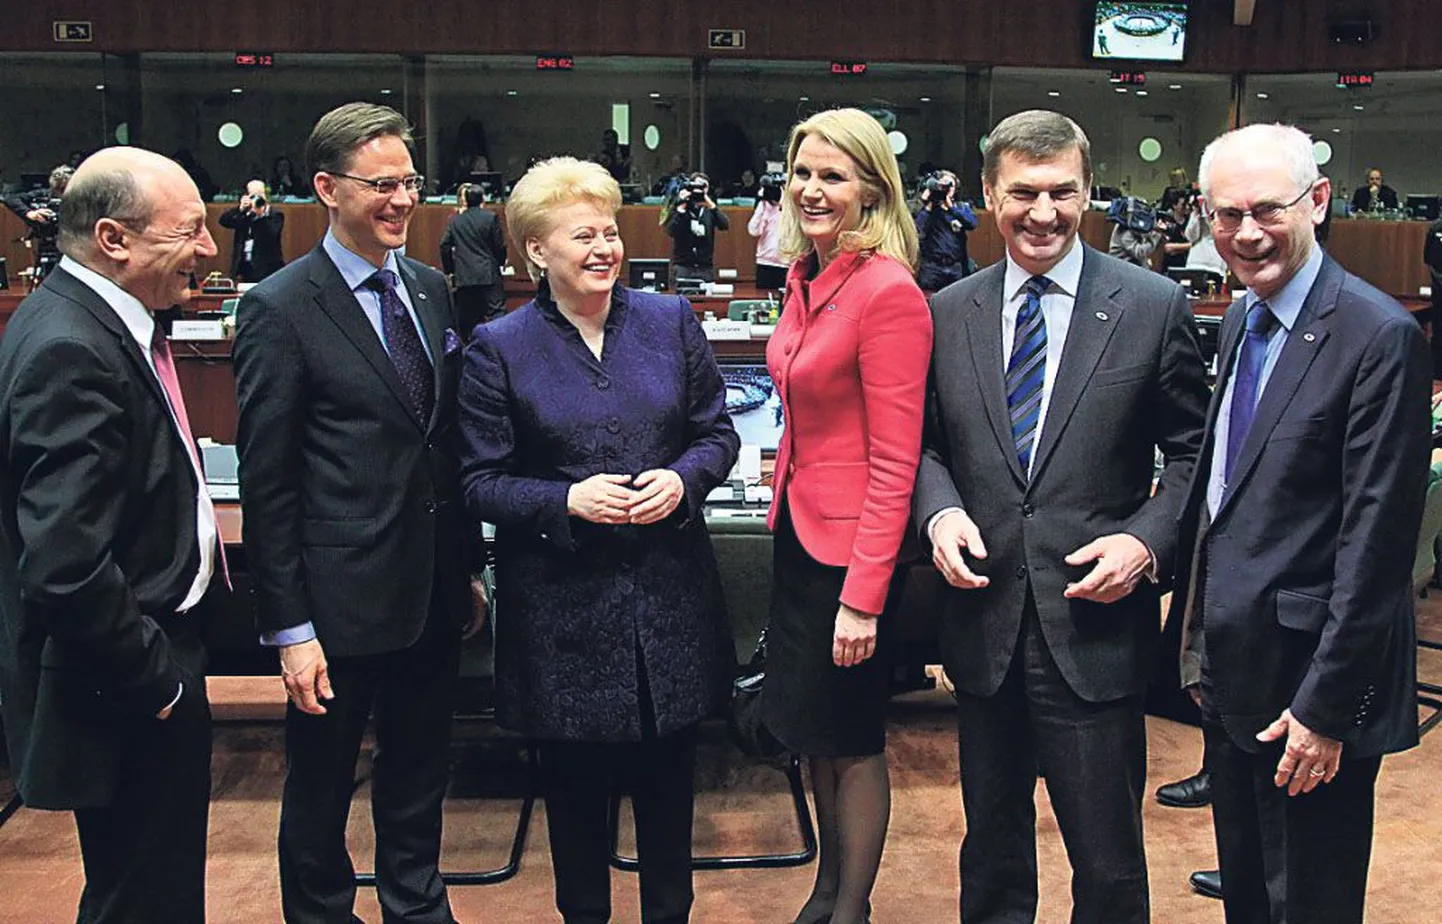 Eesti peaminister Andrus Ansip Euroopa ülemkogul. Kas võrdne võrdsete hulgas või siiski mitte?